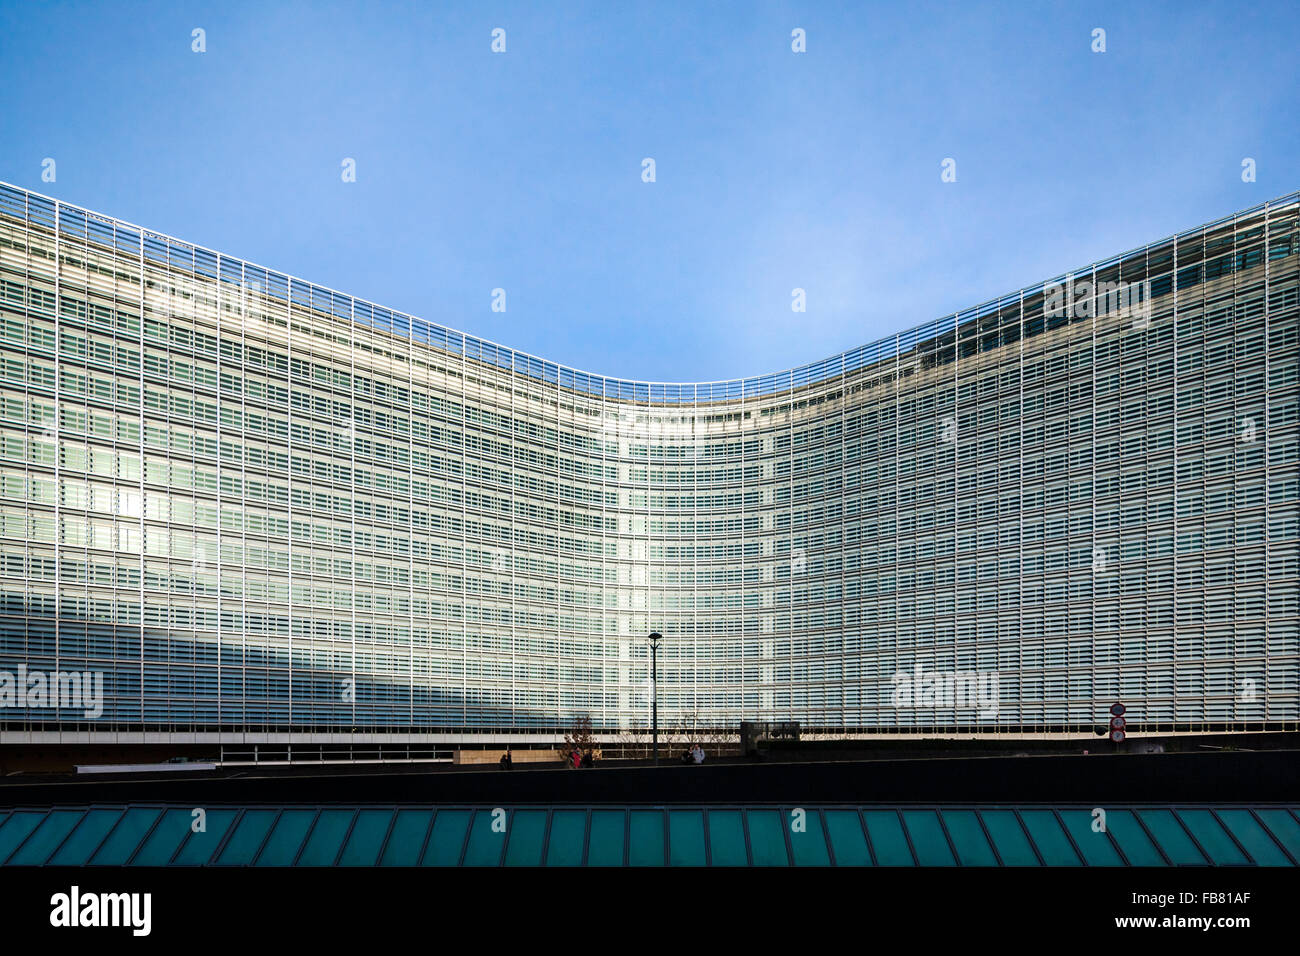 Bruxelles Berlaymont. Siège de la Commission européenne, CE, le conseil exécutif de l'Union européenne, de l'Union européenne. Brussel Bruxelles Belgique Europe. Banque D'Images